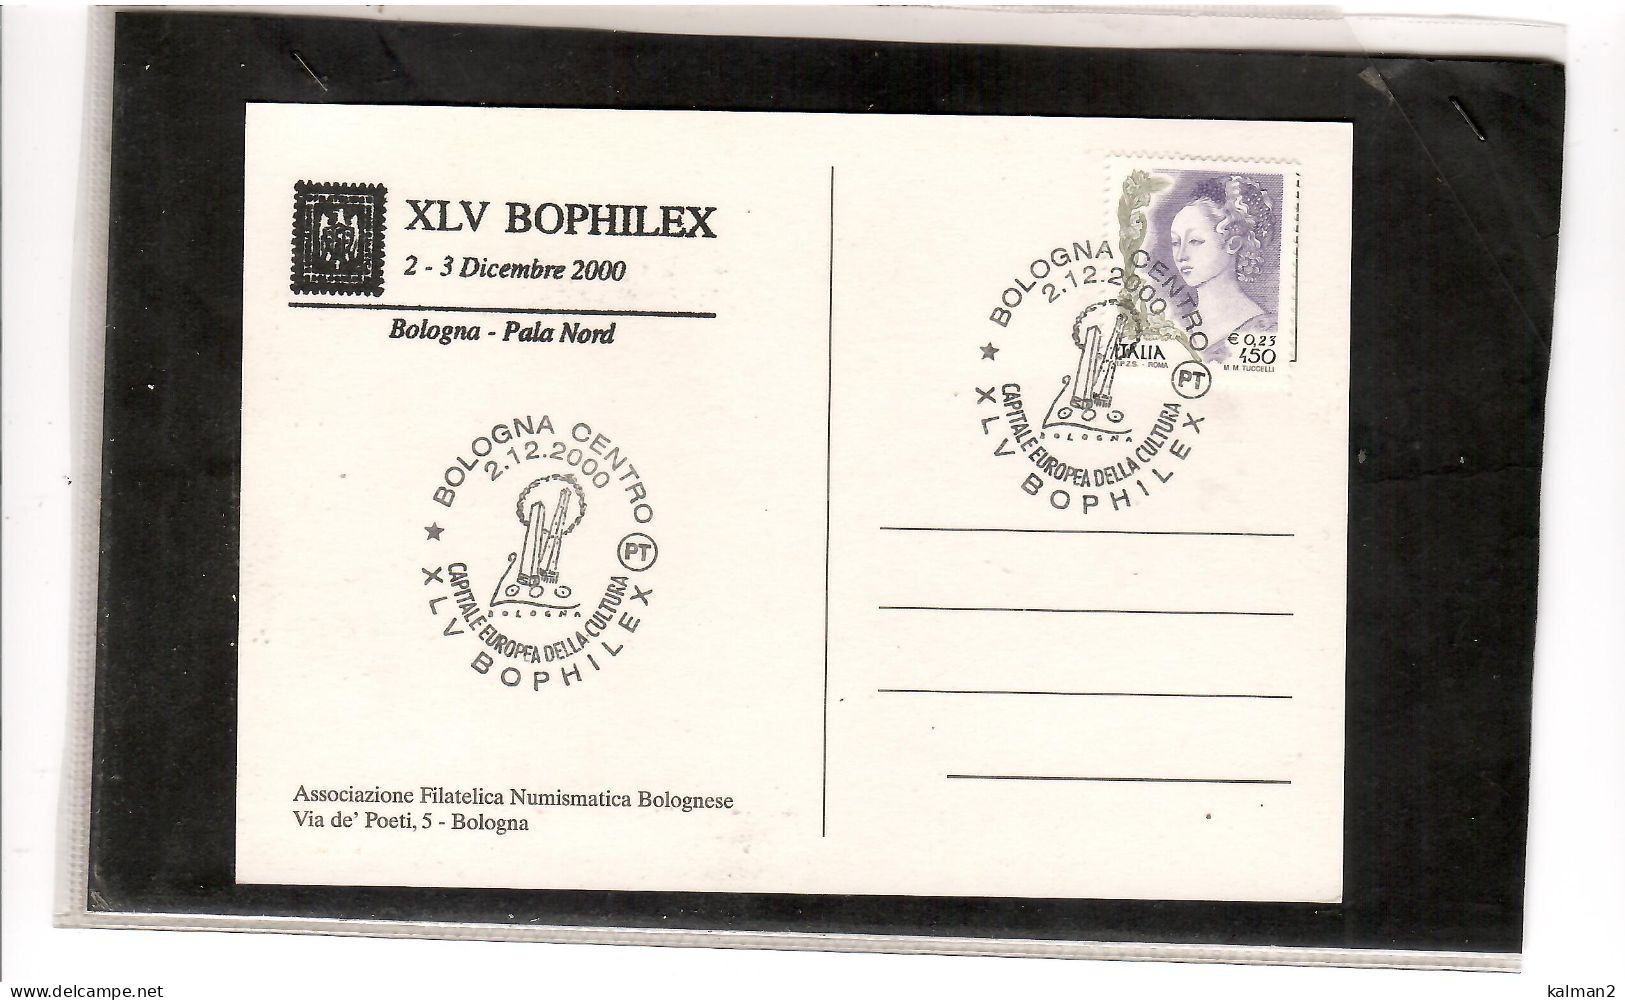 TEM19756 - BOLOGNA  2.12.2000     /    XLV   BOPHILEX   "  BOLOGNA  CAPITALE EUROPEA DELLA CULTURA" - Esposizioni Filateliche